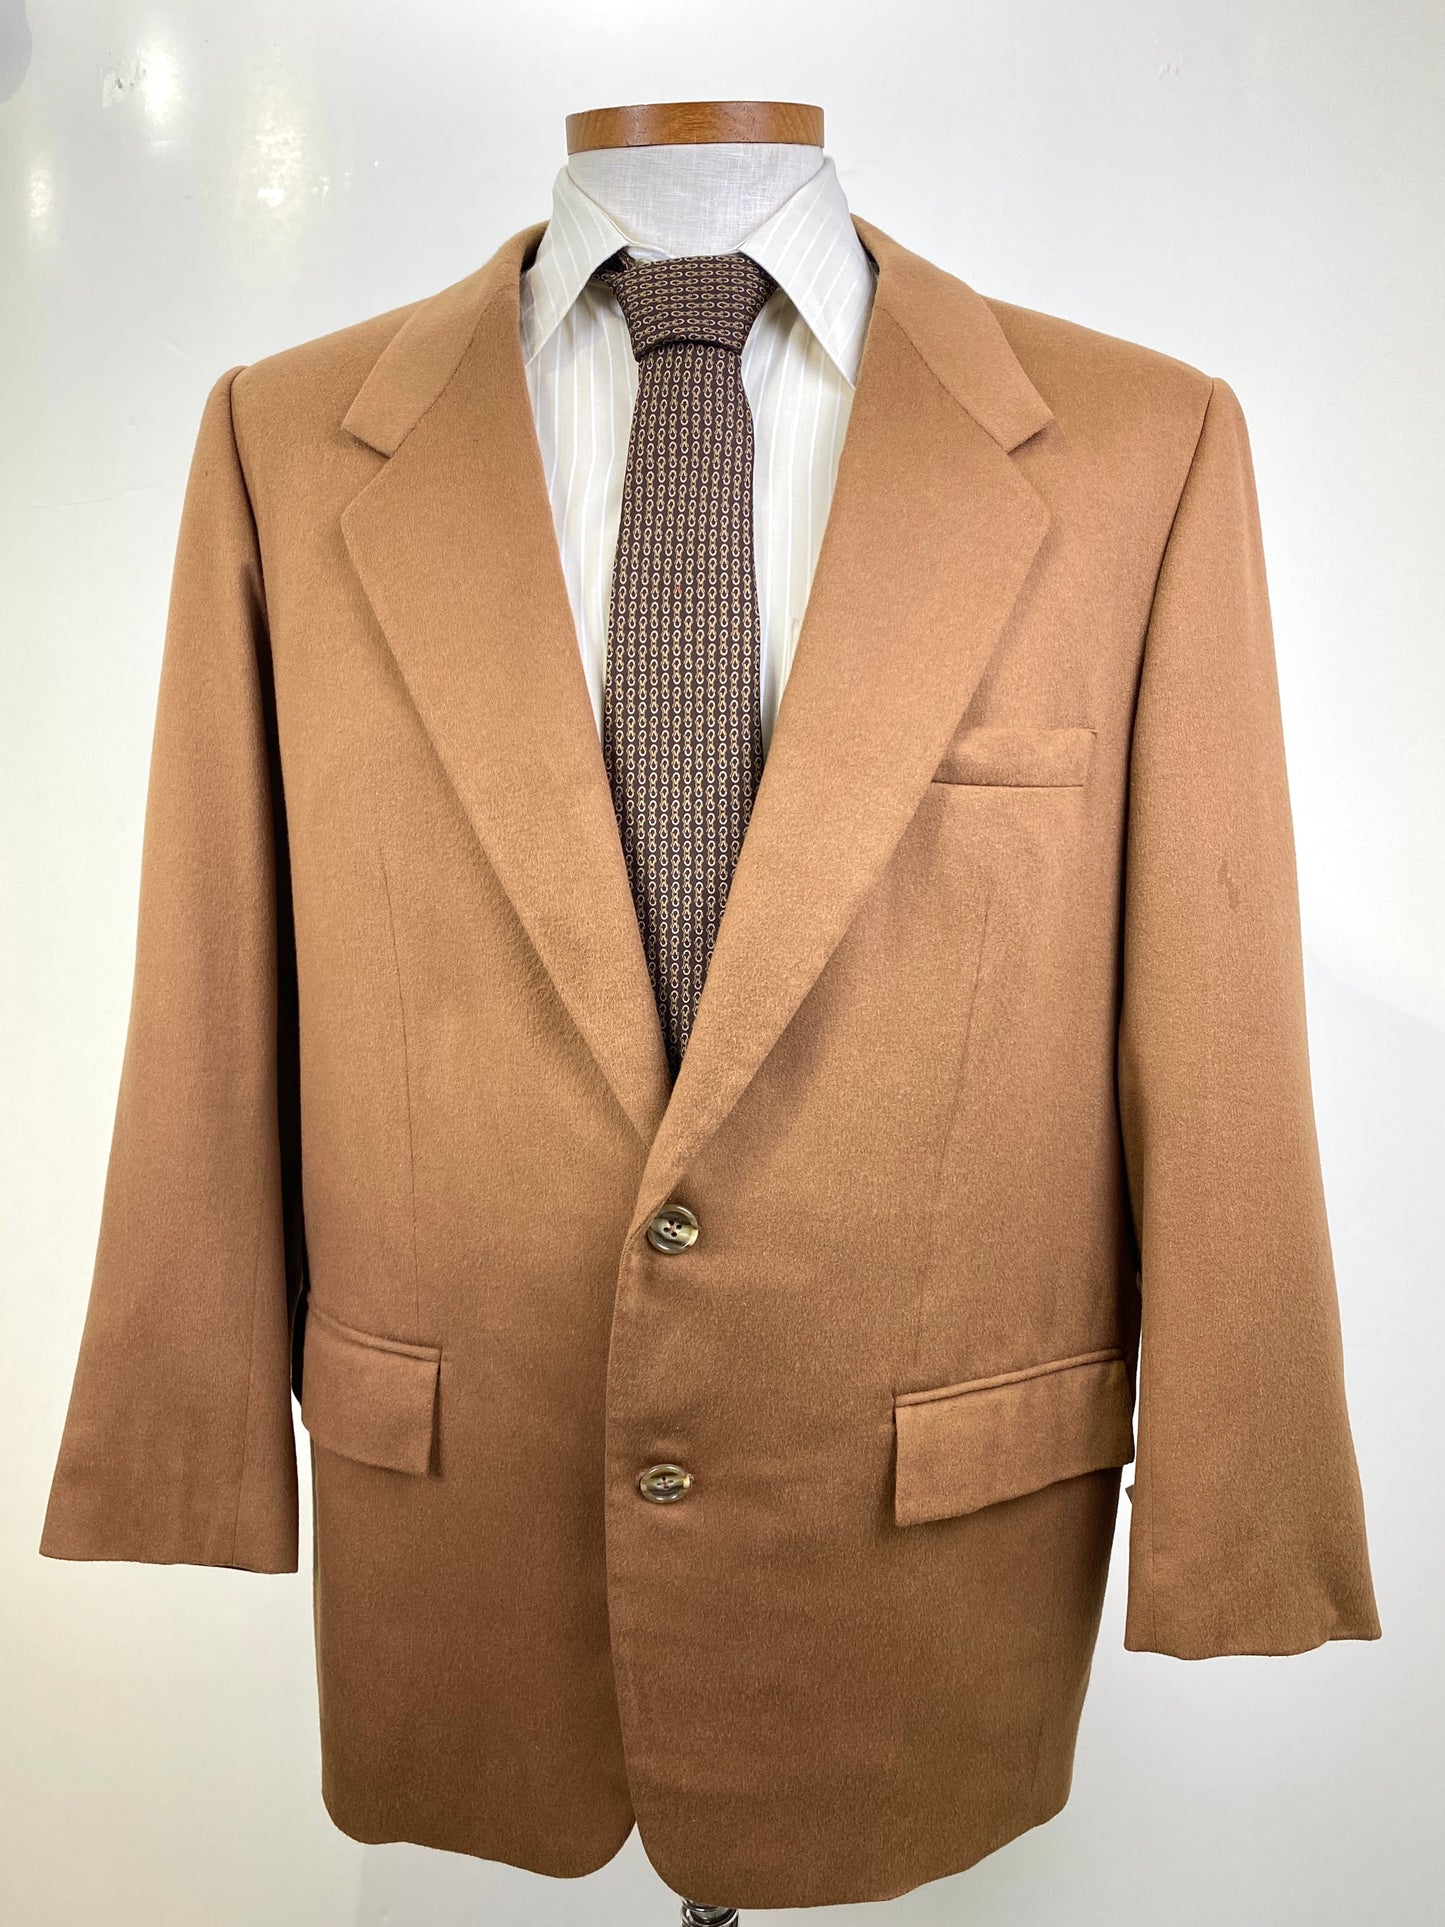 1980s Vintage Men's Brown Cashmere/ Vicuna Blazer, Paris Tailors Jacket, C44R